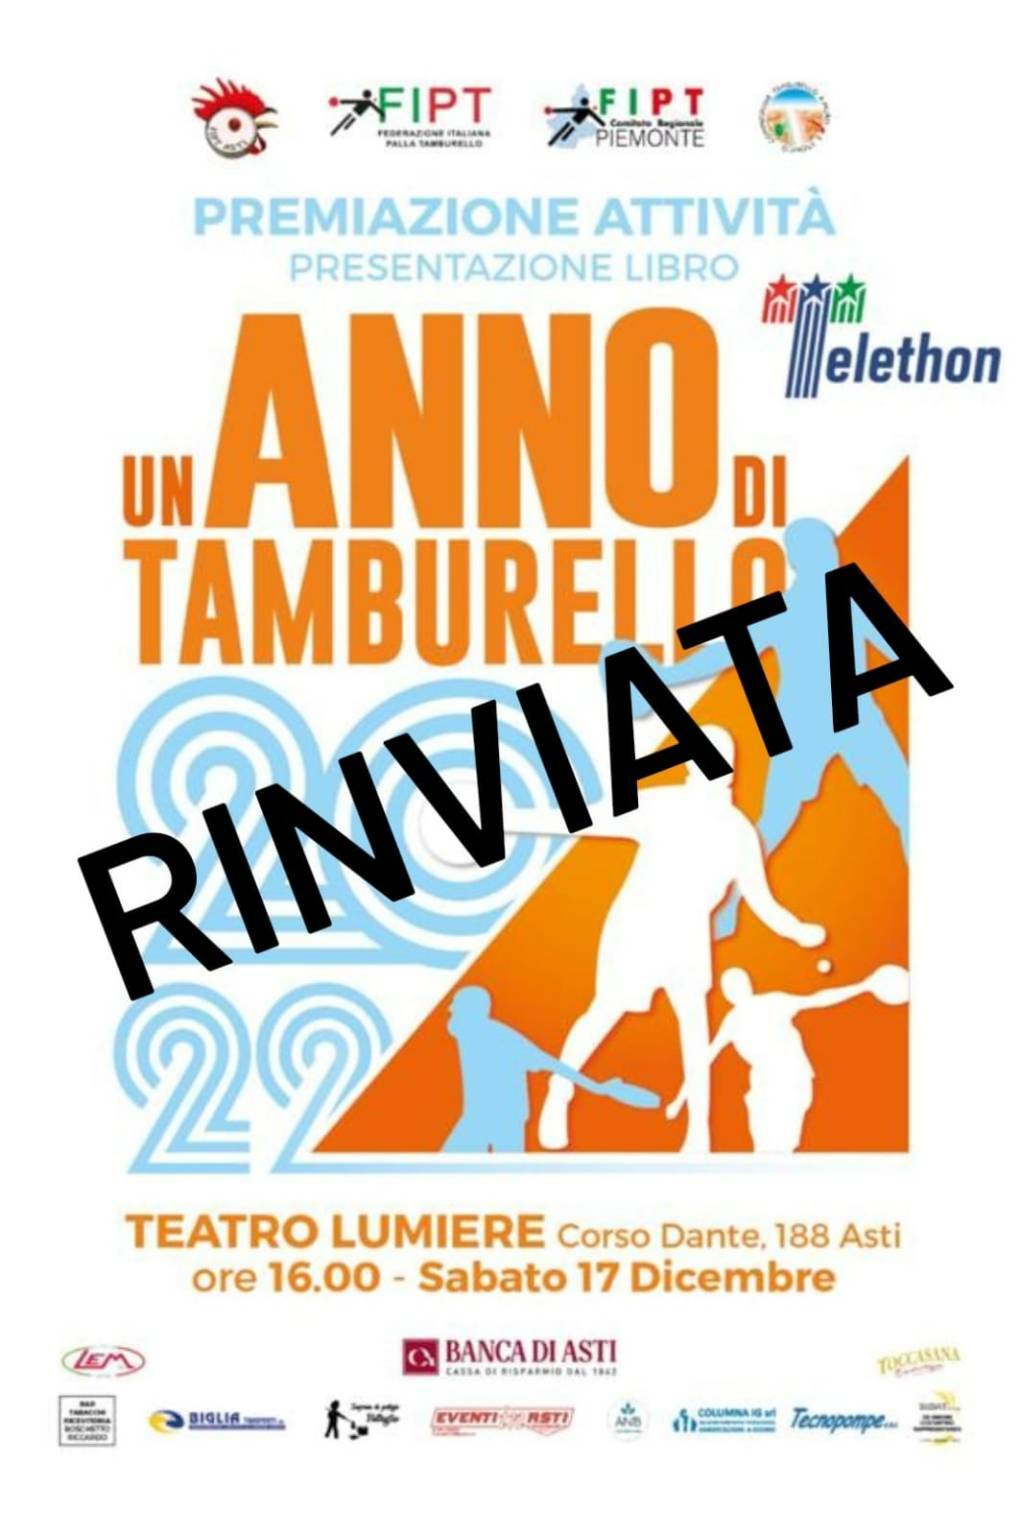 +++RINVIATA+++ Sabato 17 Dicembre sfila ad Asti il mondo del tamburello con la Premiazione dell’Attività Tamburellistica 2022